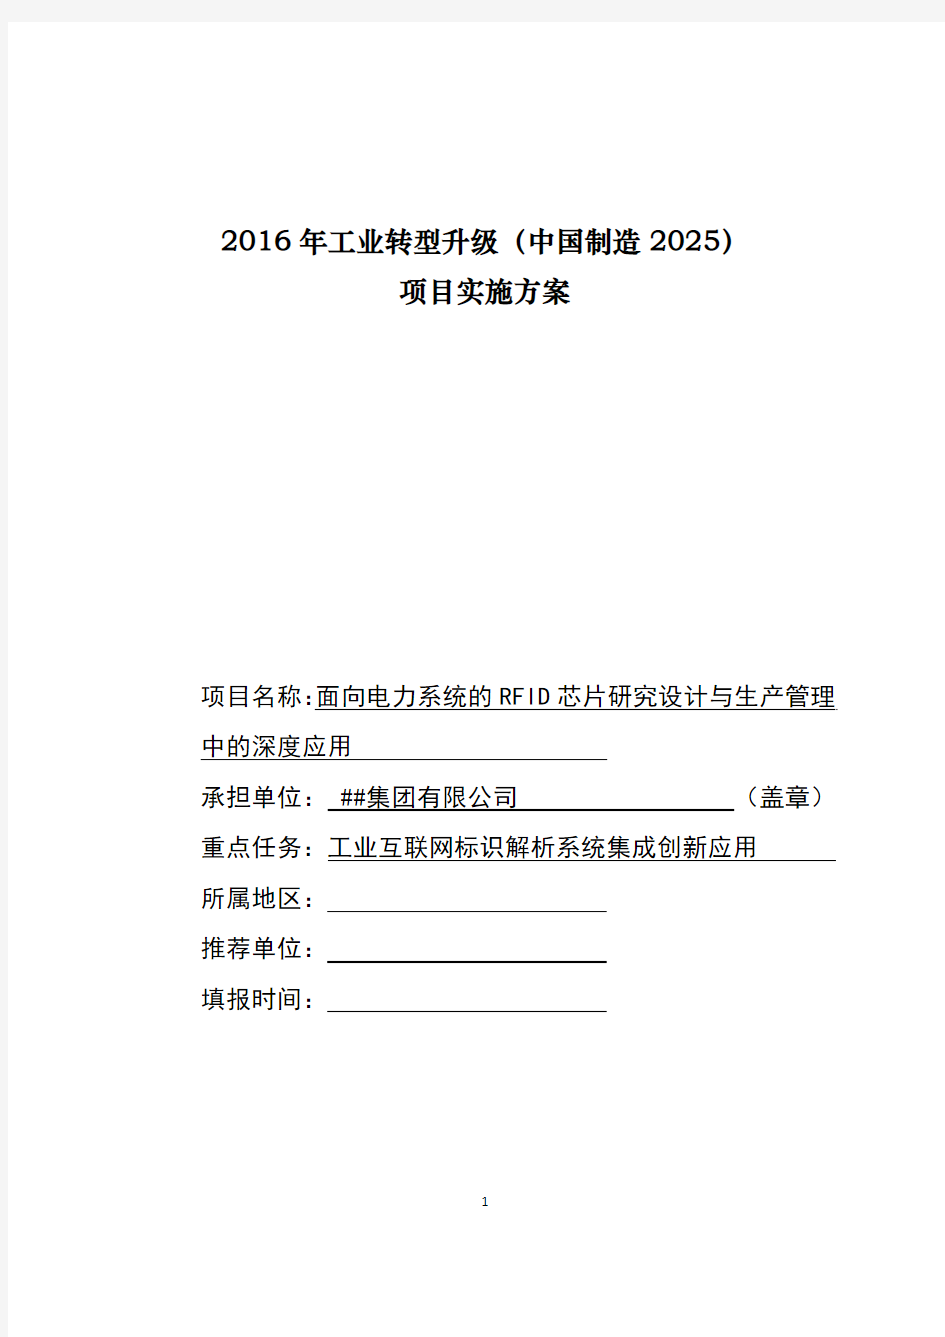 2016年工业转型升级(中国制造2025)项目实施方案